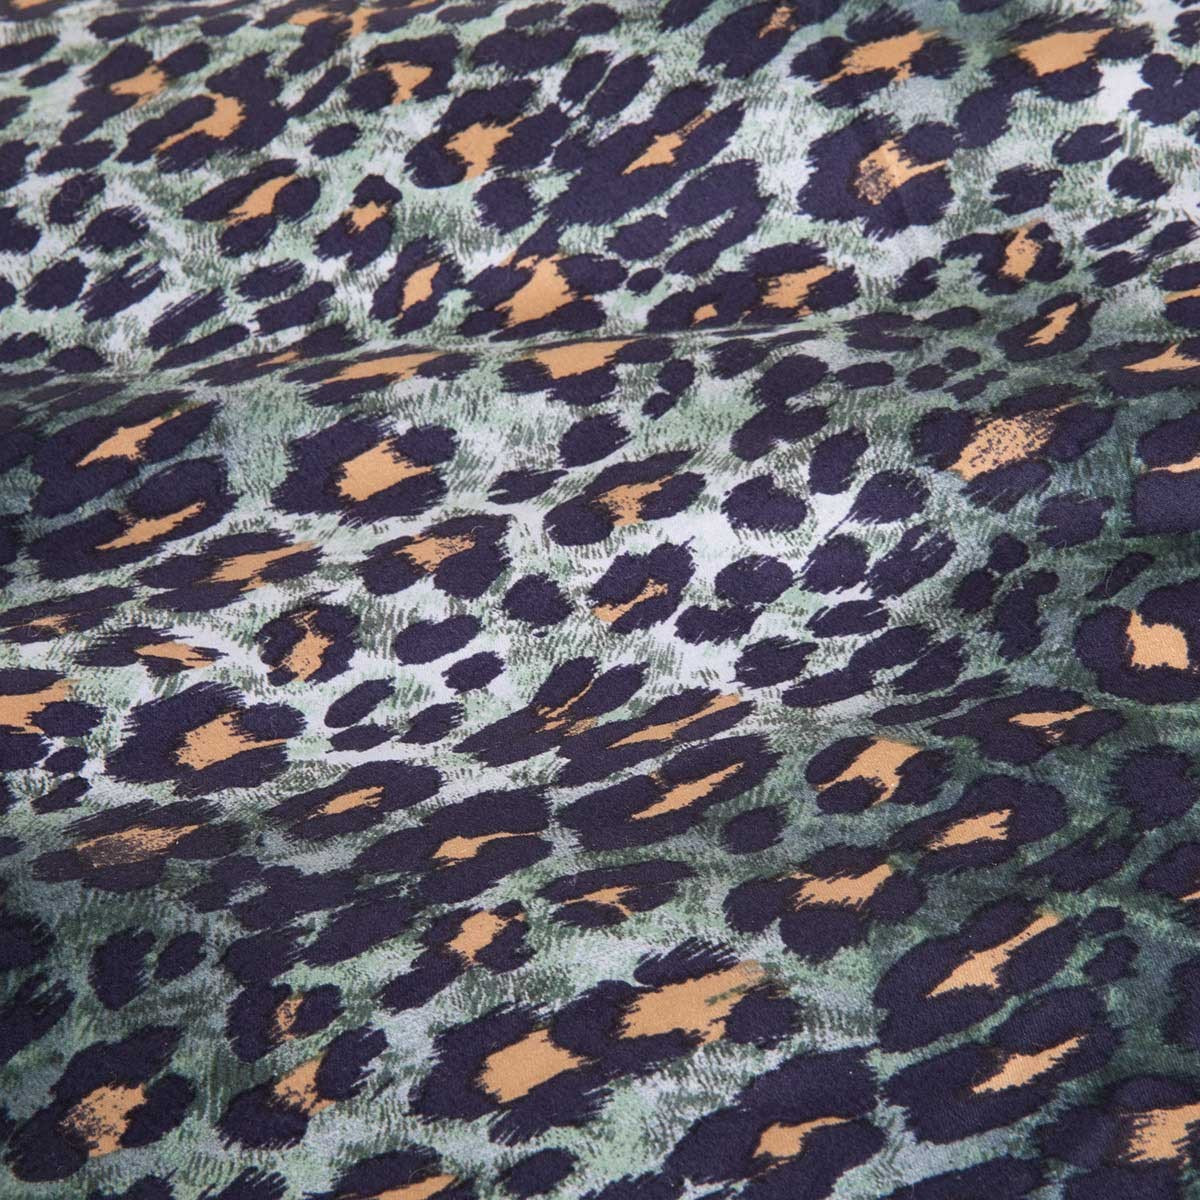 комплект постельного белья Kenzo Leopard - купить в магазине Yves Delorme Russia